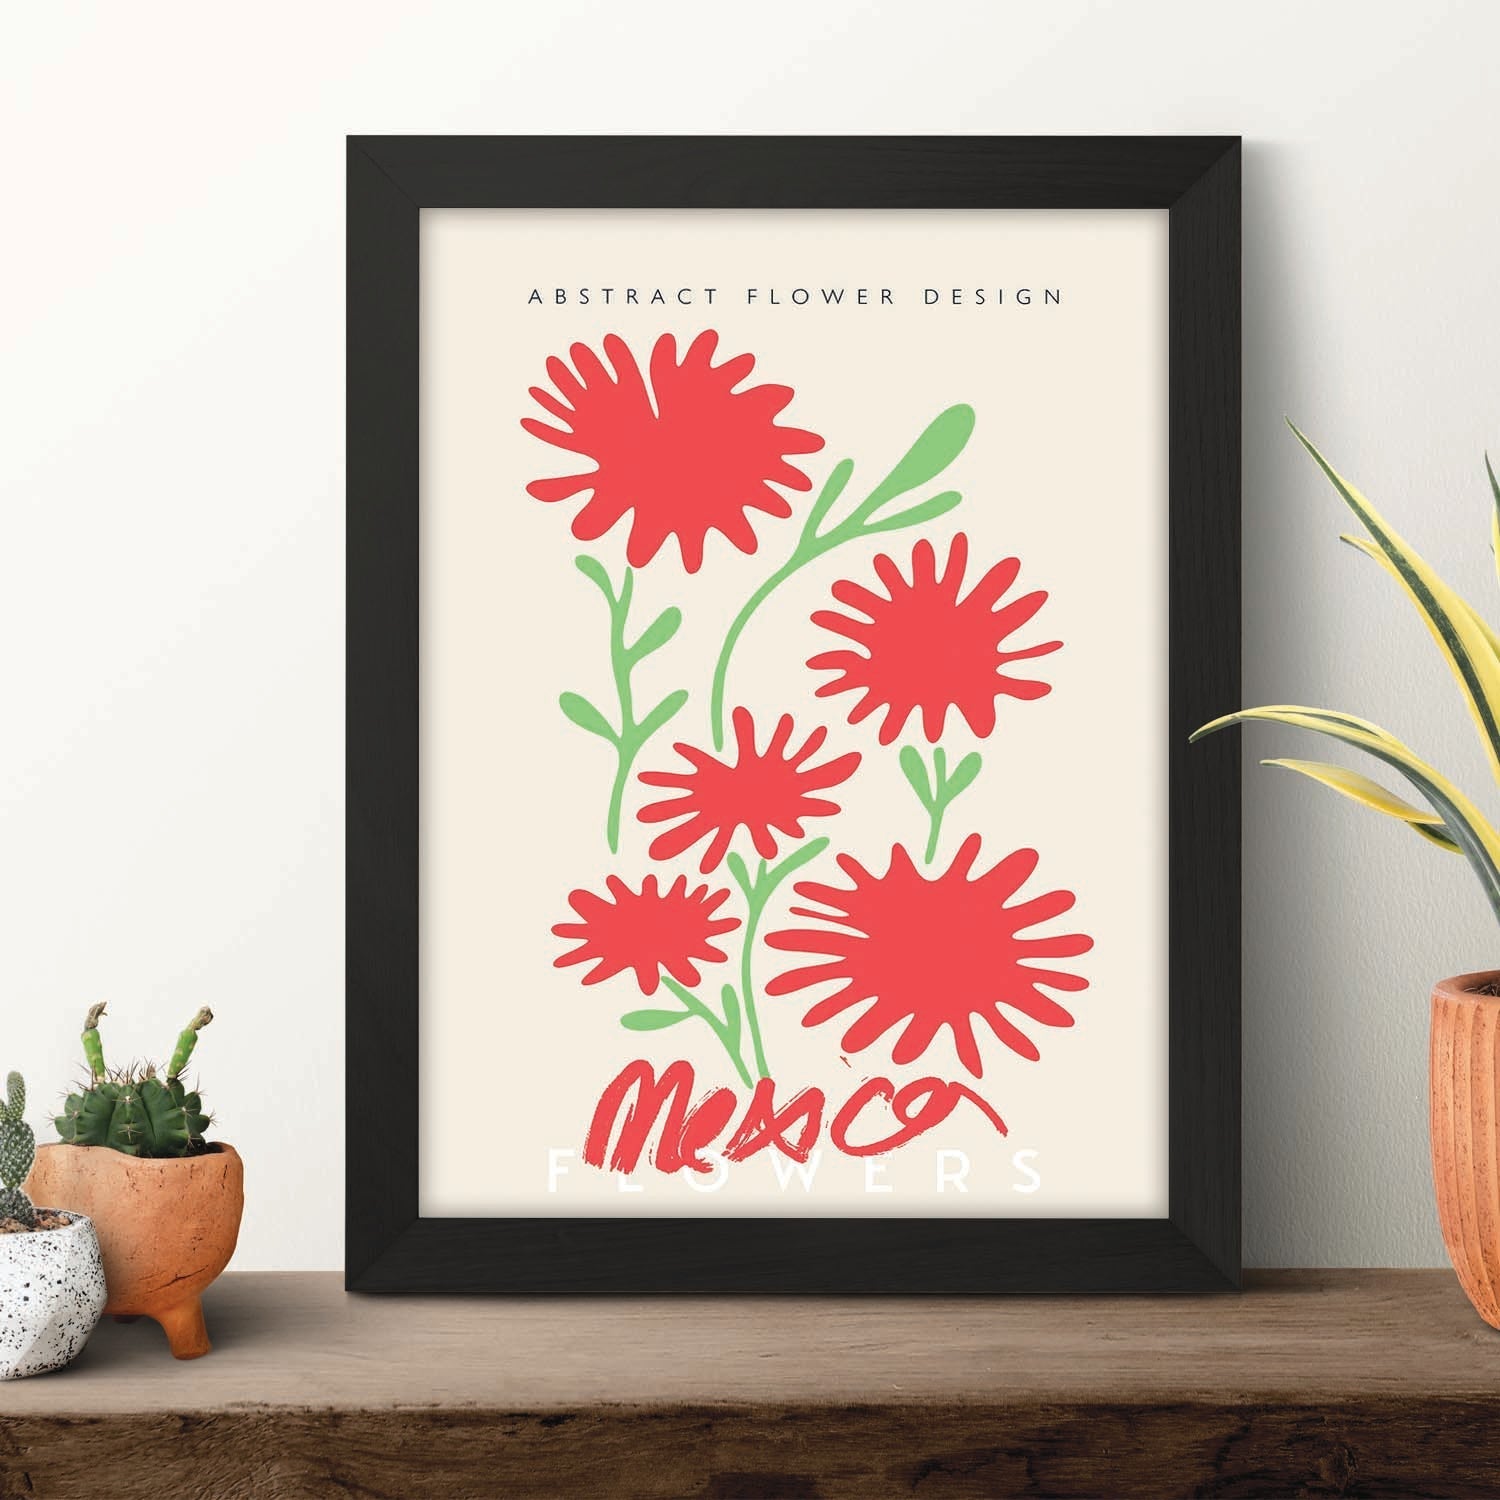 Lamina artistica decorativa con ilustración de Diseño abstracto de flor México-Artwork-Nacnic-Nacnic Estudio SL